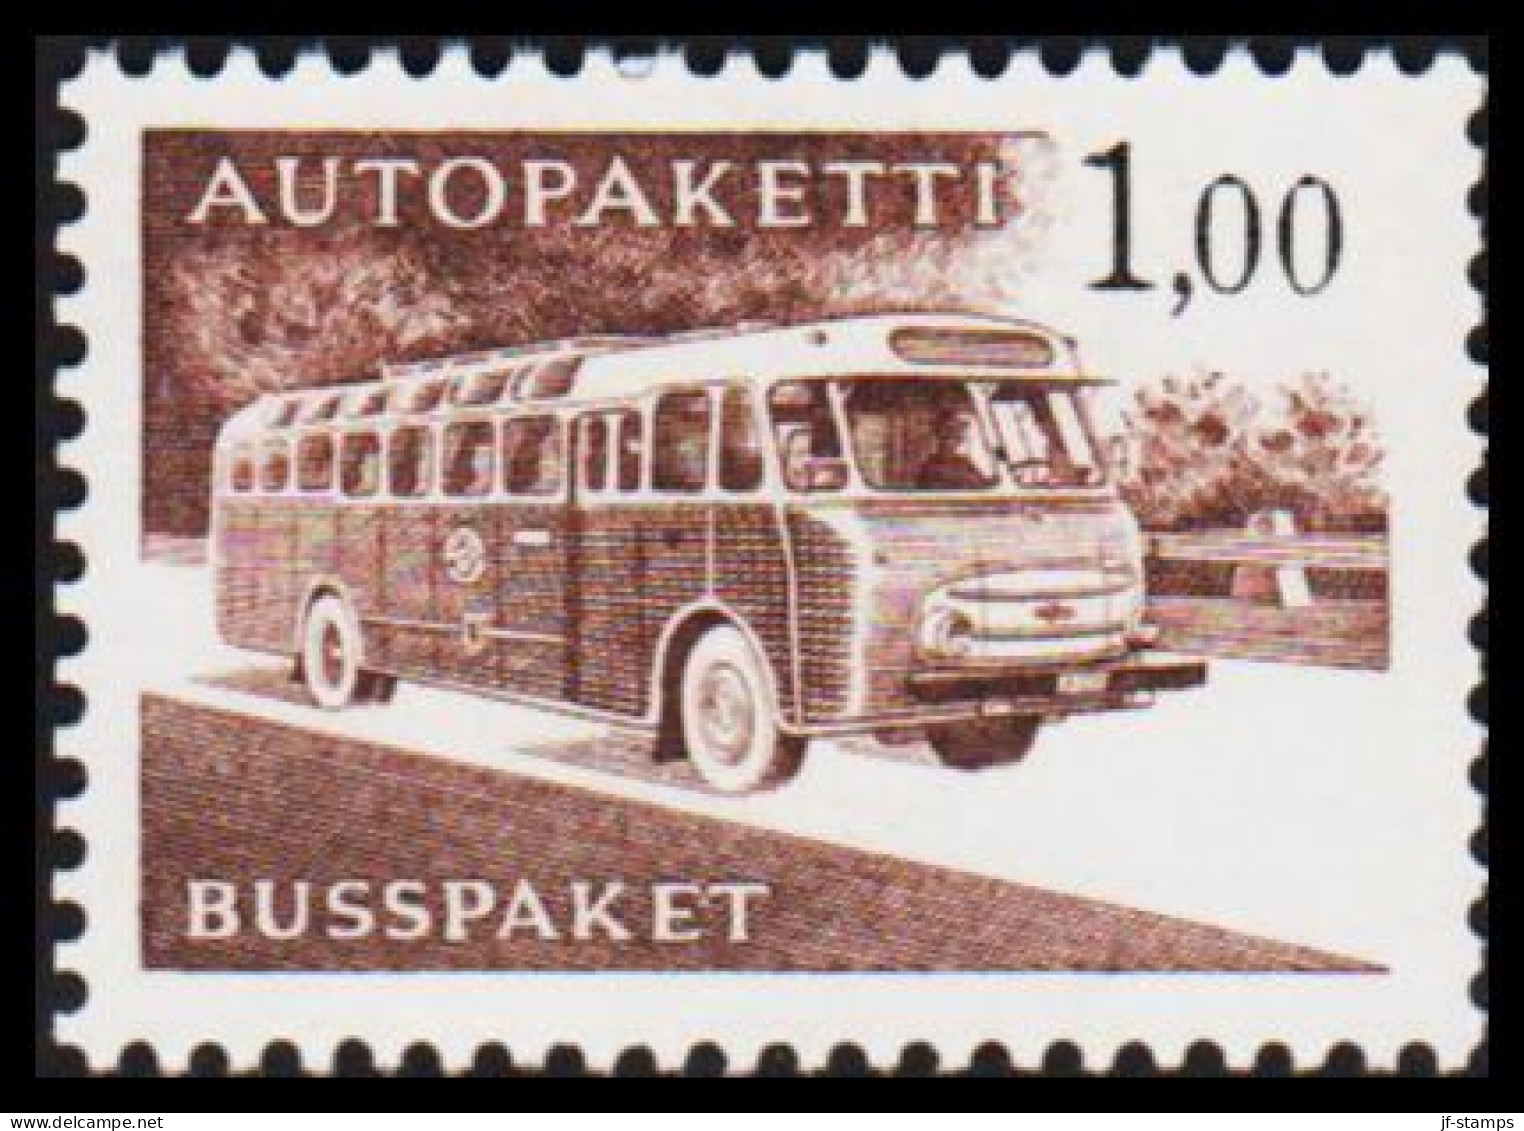 1963-1980. FINLAND. Mail Bus. 1,00 Mk. AUTOPAKETTI - BUSSPAKET Never Hinged. Lumogen Paper... (Michel AP 13y) - JF535633 - Colis Par Autobus